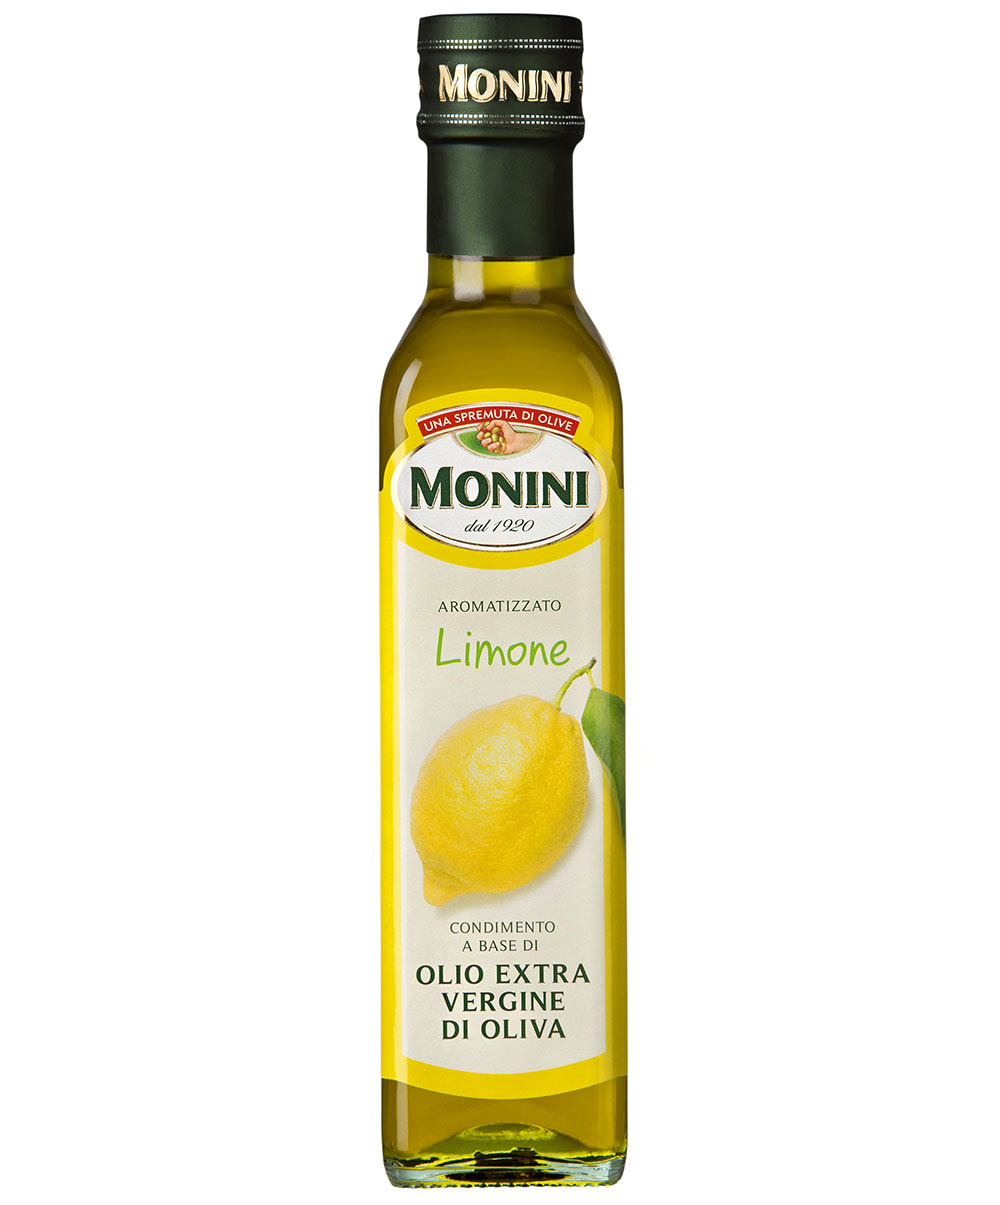 Monini Extra panenský olivový olej s příchutí Citron 250 ml